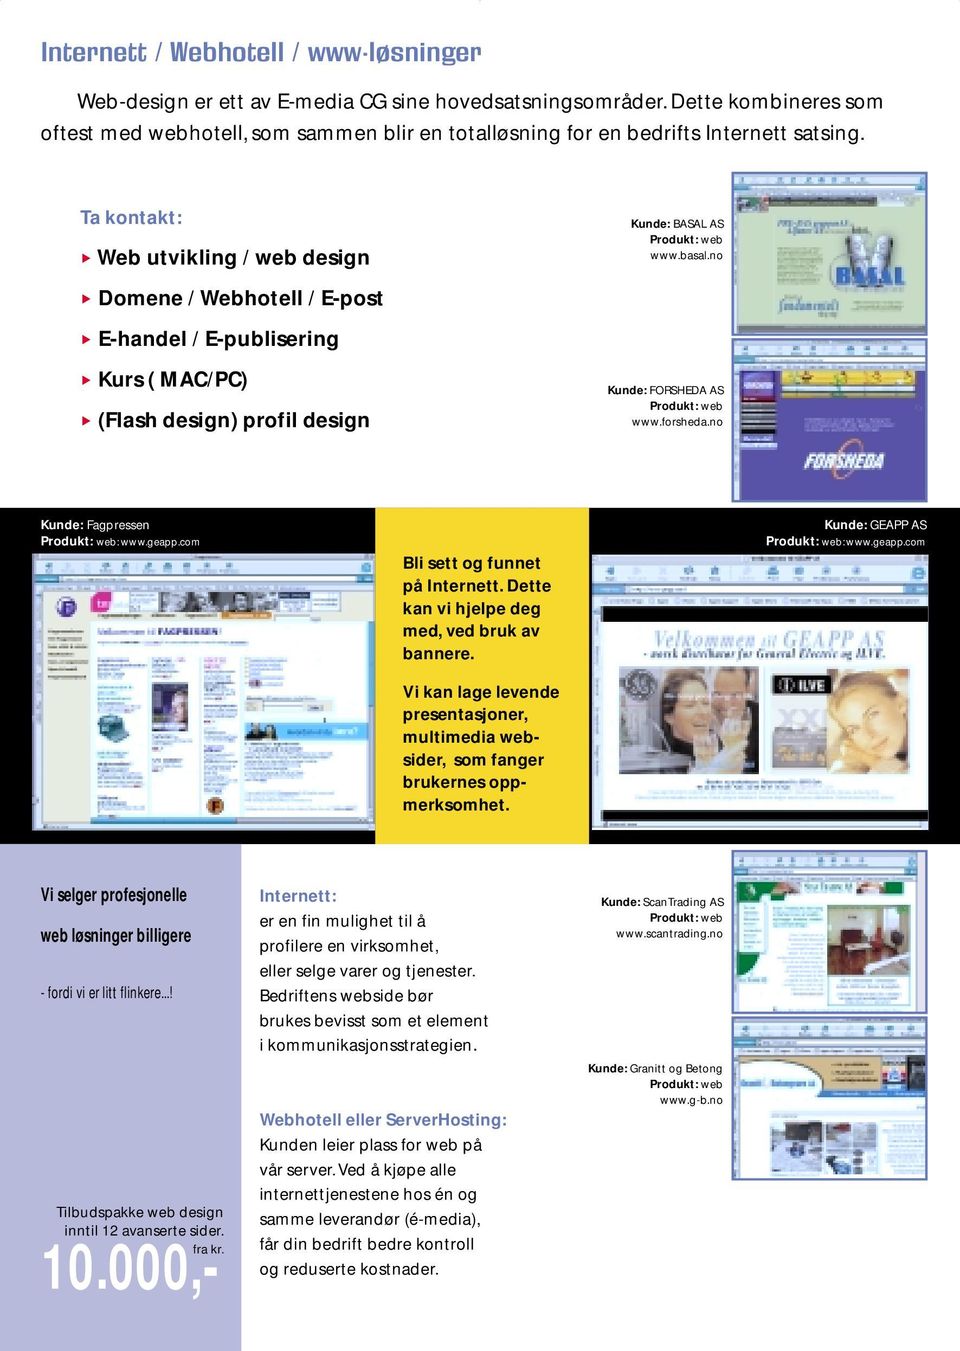 Ta kontakt: Web utvikling / web design Domene / Webhotell / E-post E-handel / E-publisering Kurs ( MAC/PC) (Flash design) profil design Kunde: BASAL AS Produkt: web www.basal.